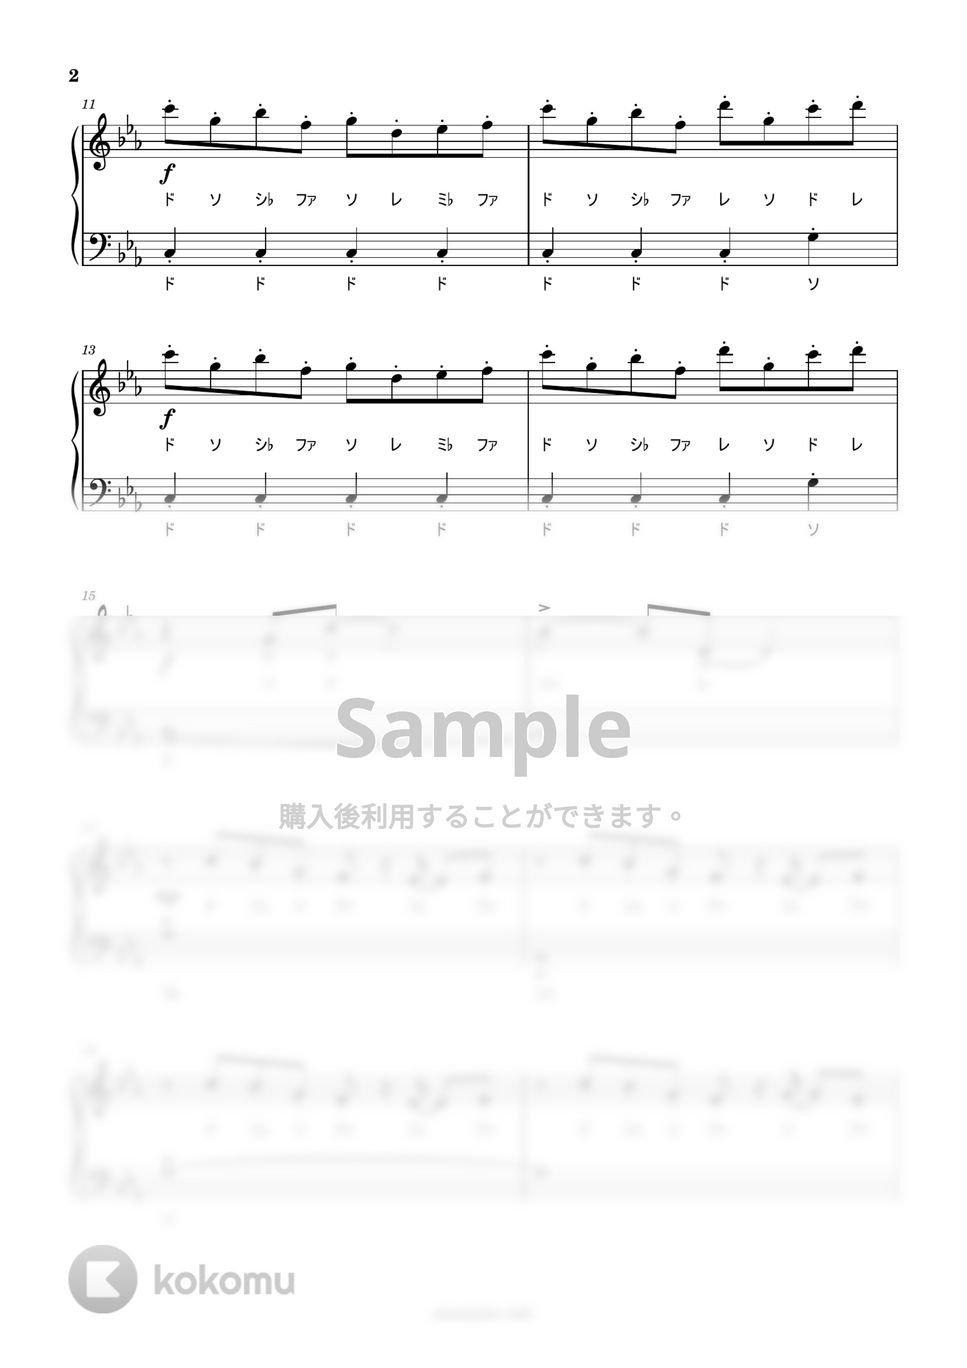 千と千尋の神隠し - 竜の少年 (ドレミ付き簡単楽譜) by ピアノ塾